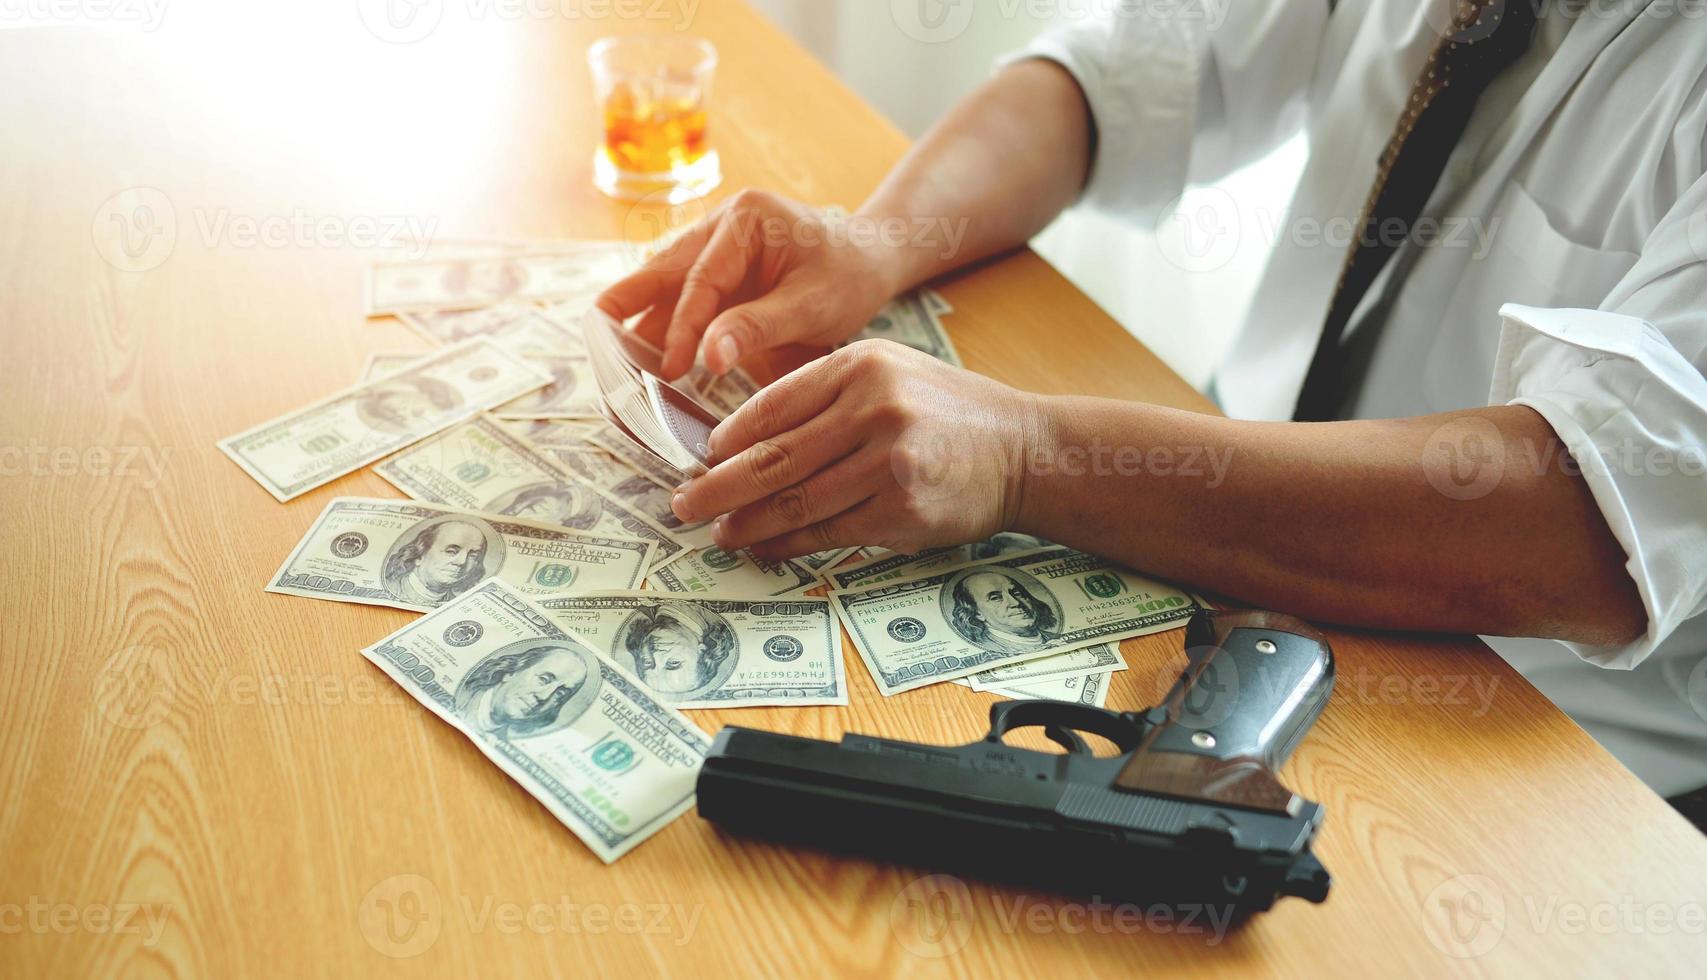 gokker speelt kaarten en oefent goktactieken met geld en sterke drank op zijn tafel foto